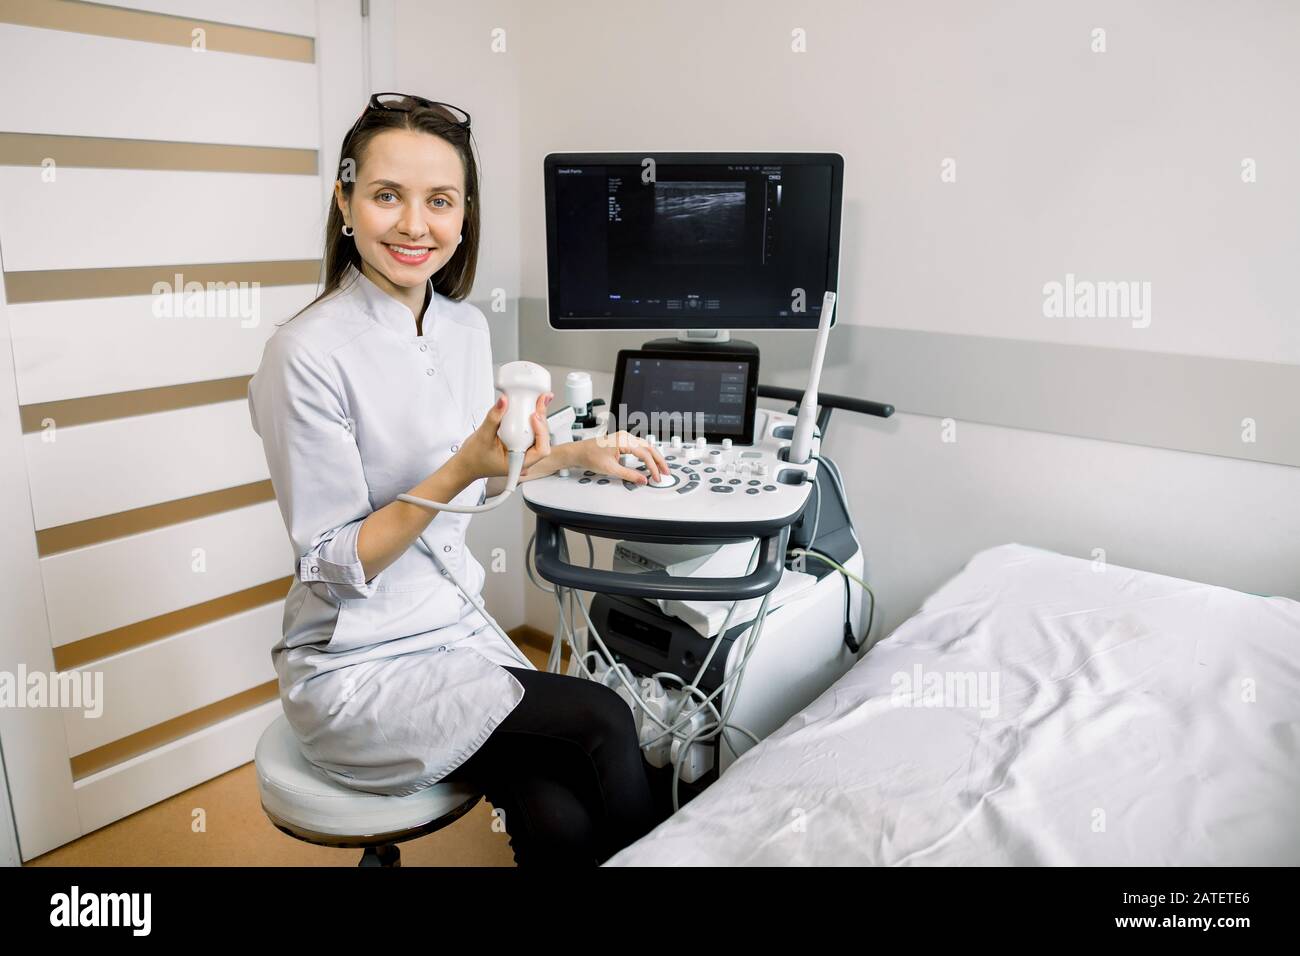 Portrait des jungen, lächelnden kaukasischen Frauenarztes, des Bedieners des 4D-Ultraschall-Scanners, des Ultraschallscanners und des Wartens auf den Patienten. Stockfoto